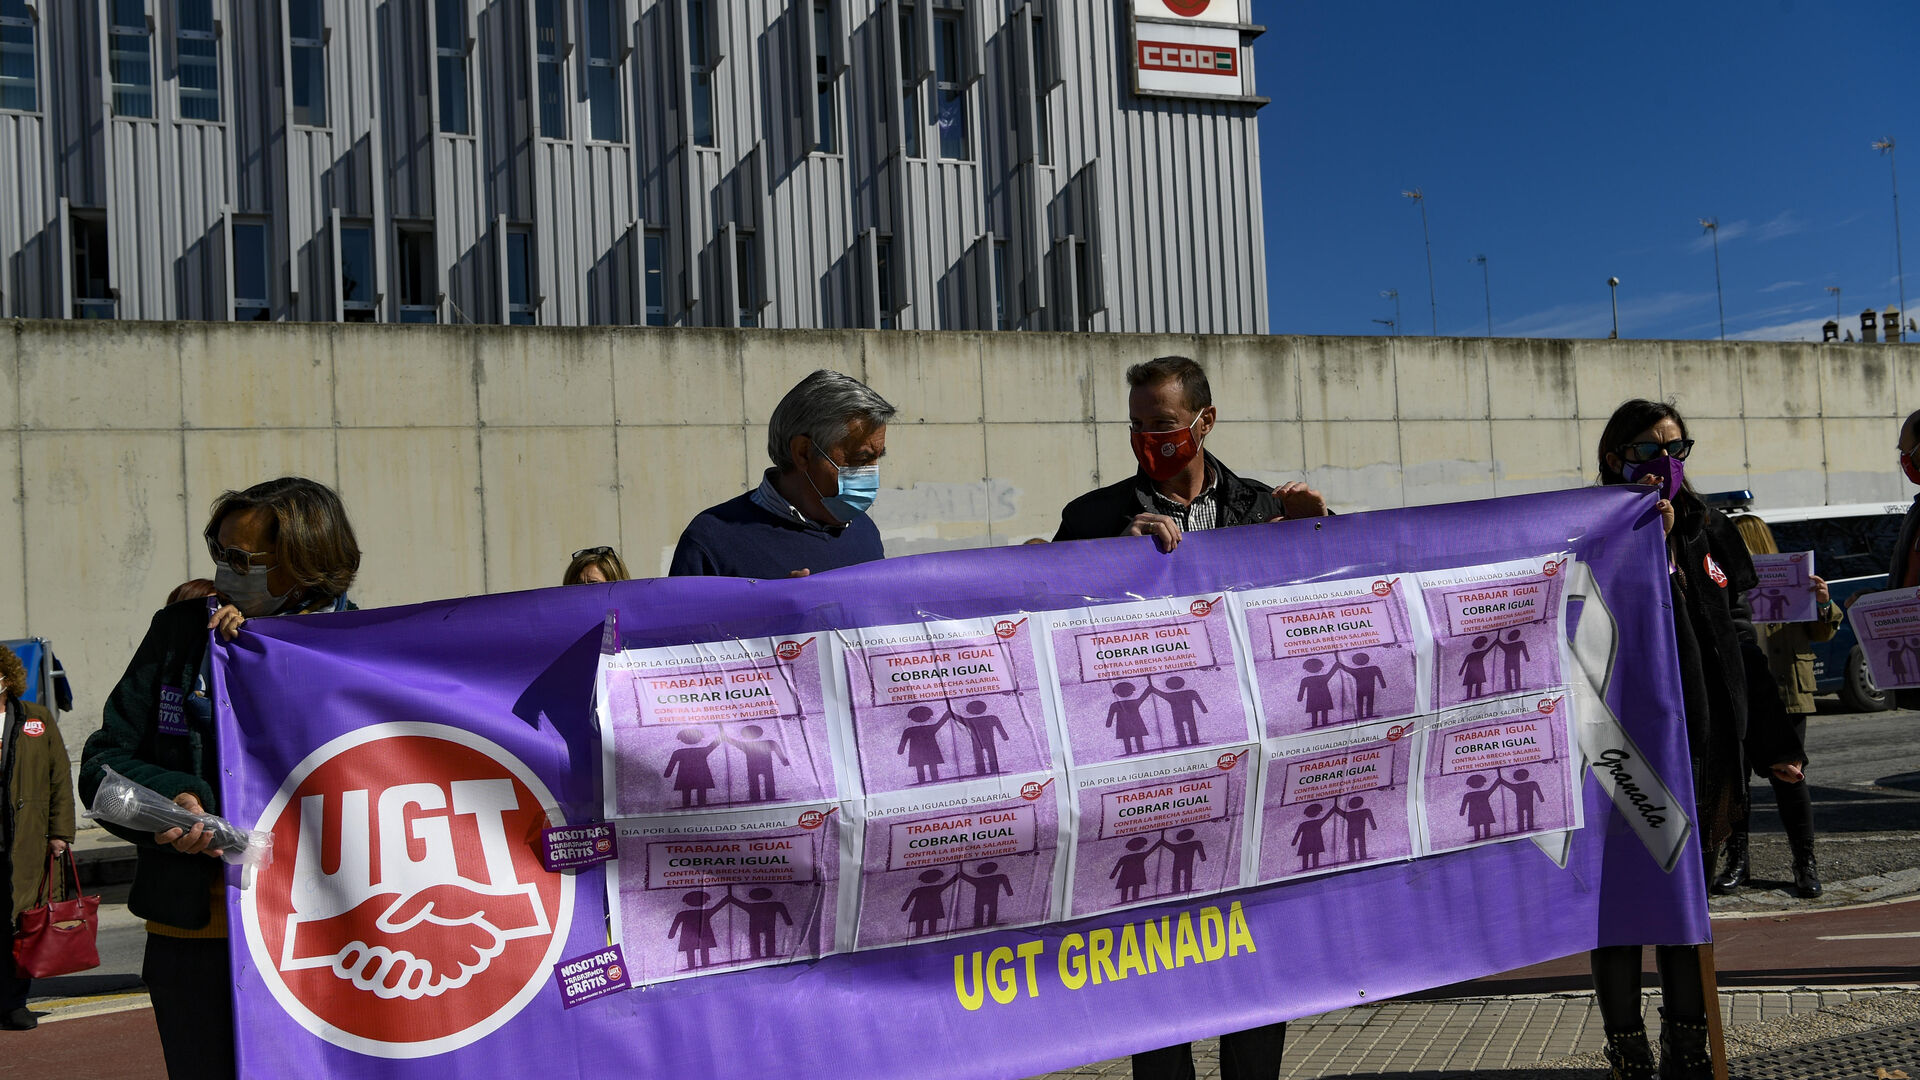 Fotos: protesta por la igualdad salarial en Granada